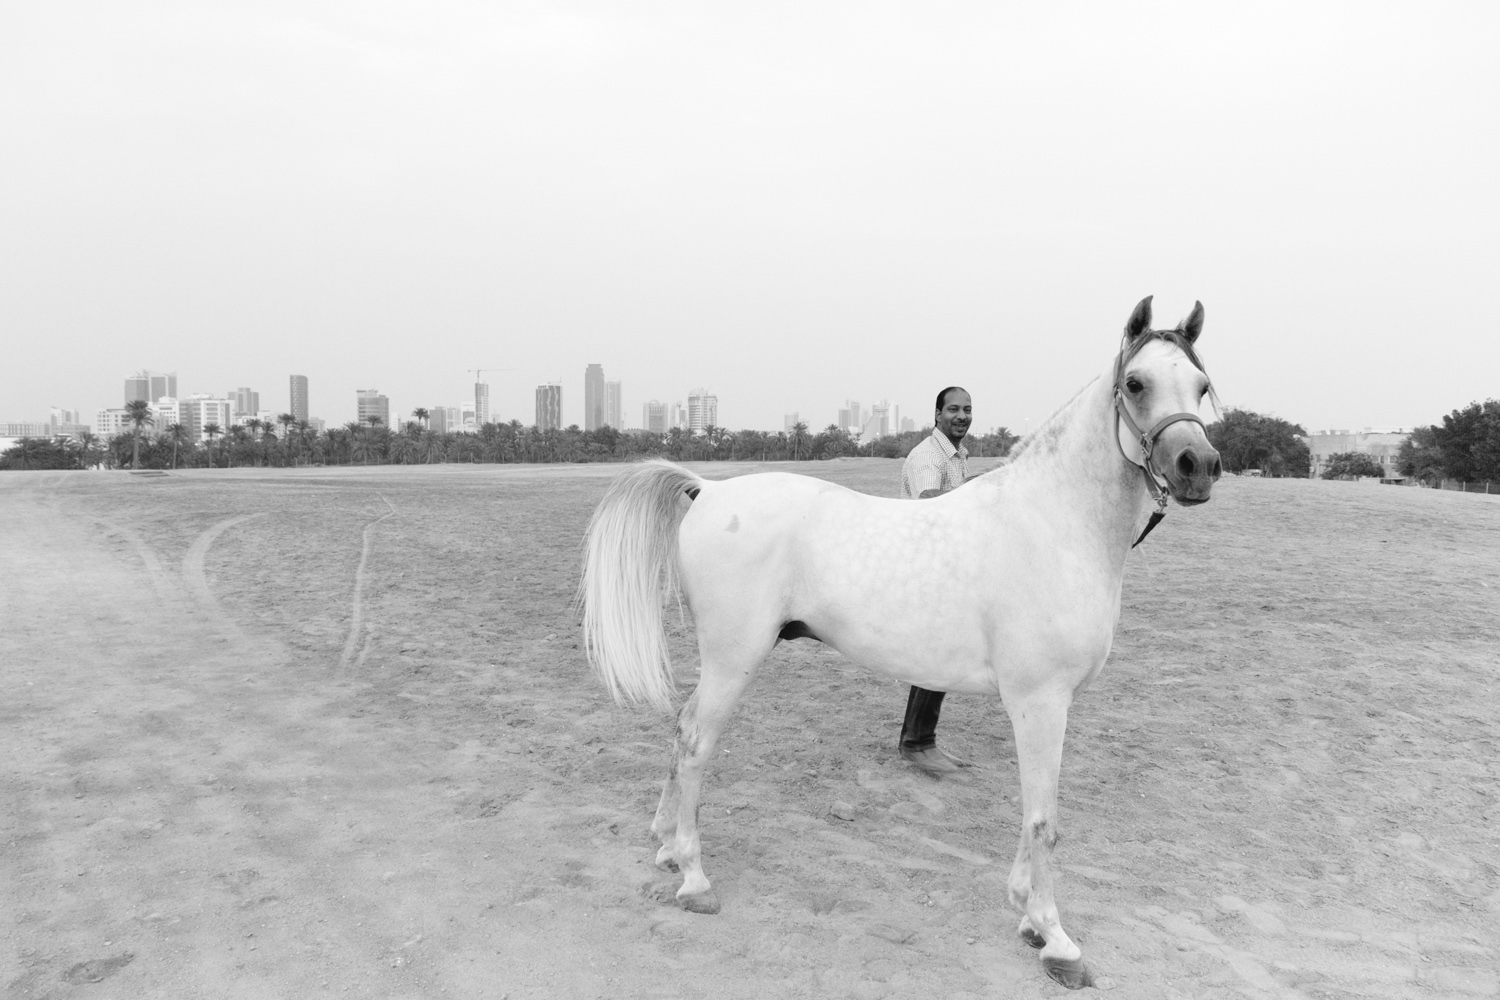 Christian-Schaffer-Bahrain-Desert-White-Horse-002.jpg